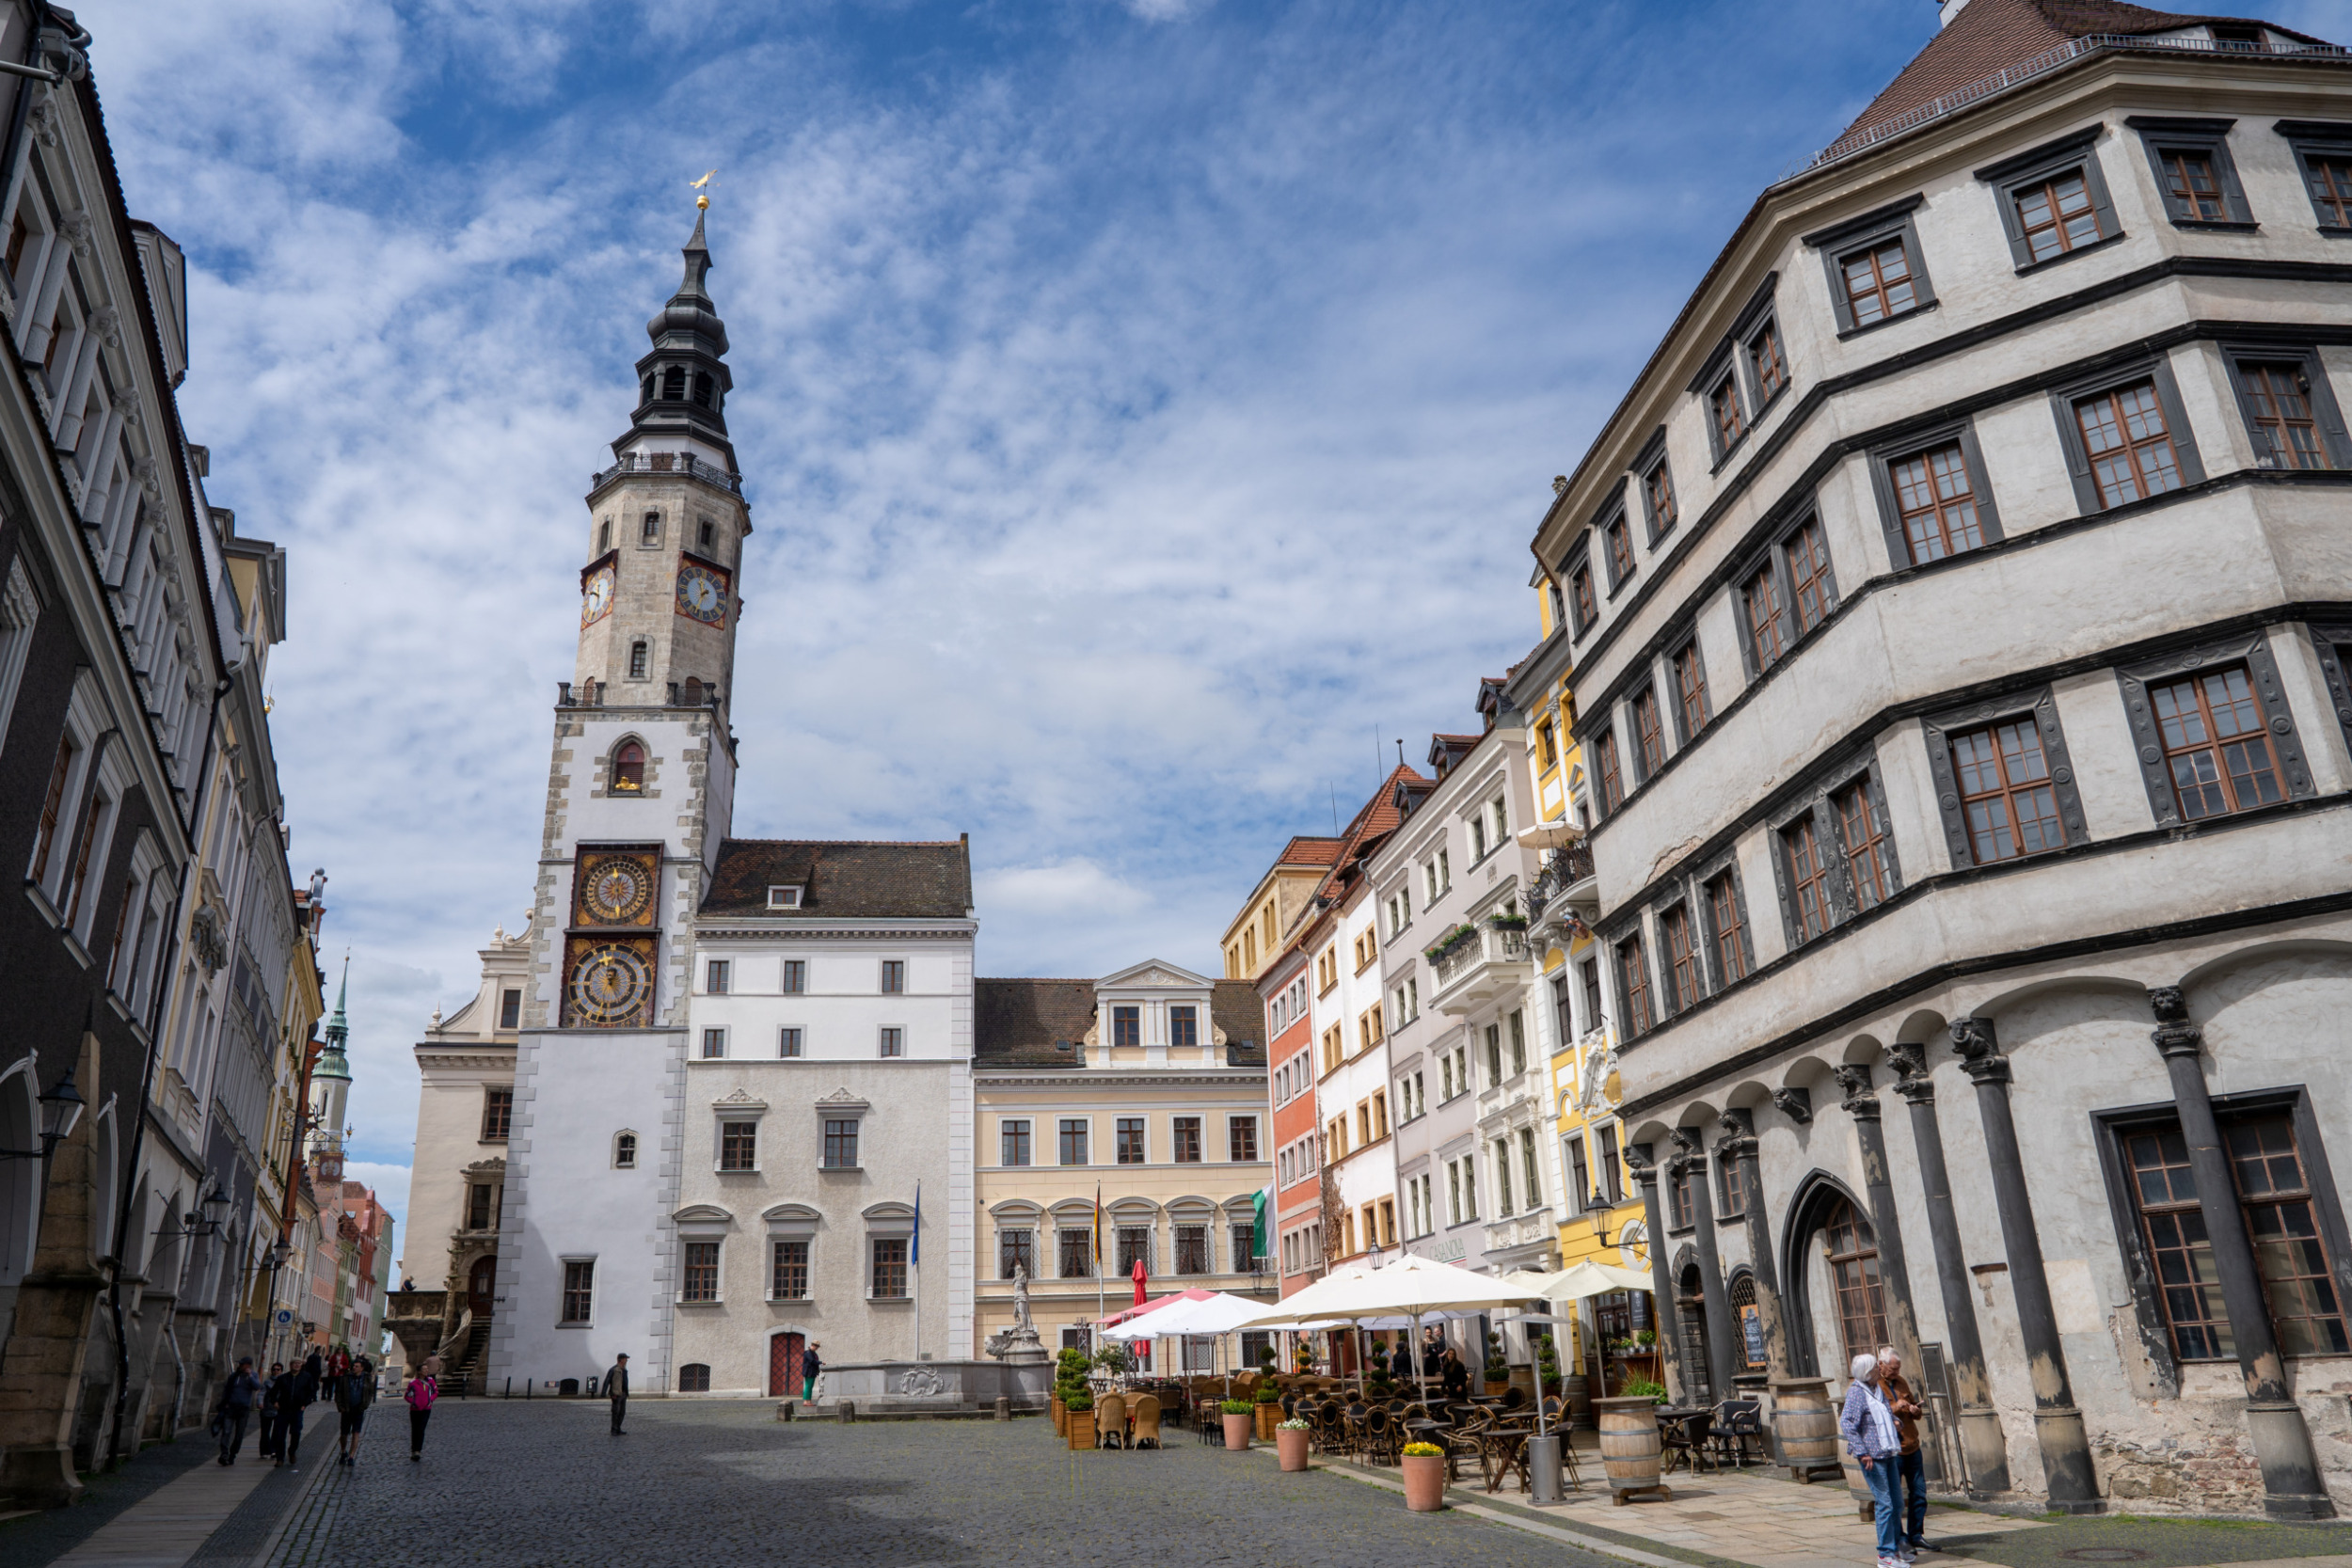 Das Rathaus von Görlitz gehört zu den bekanntesten Sehenswürdigkeiten von Görlitz